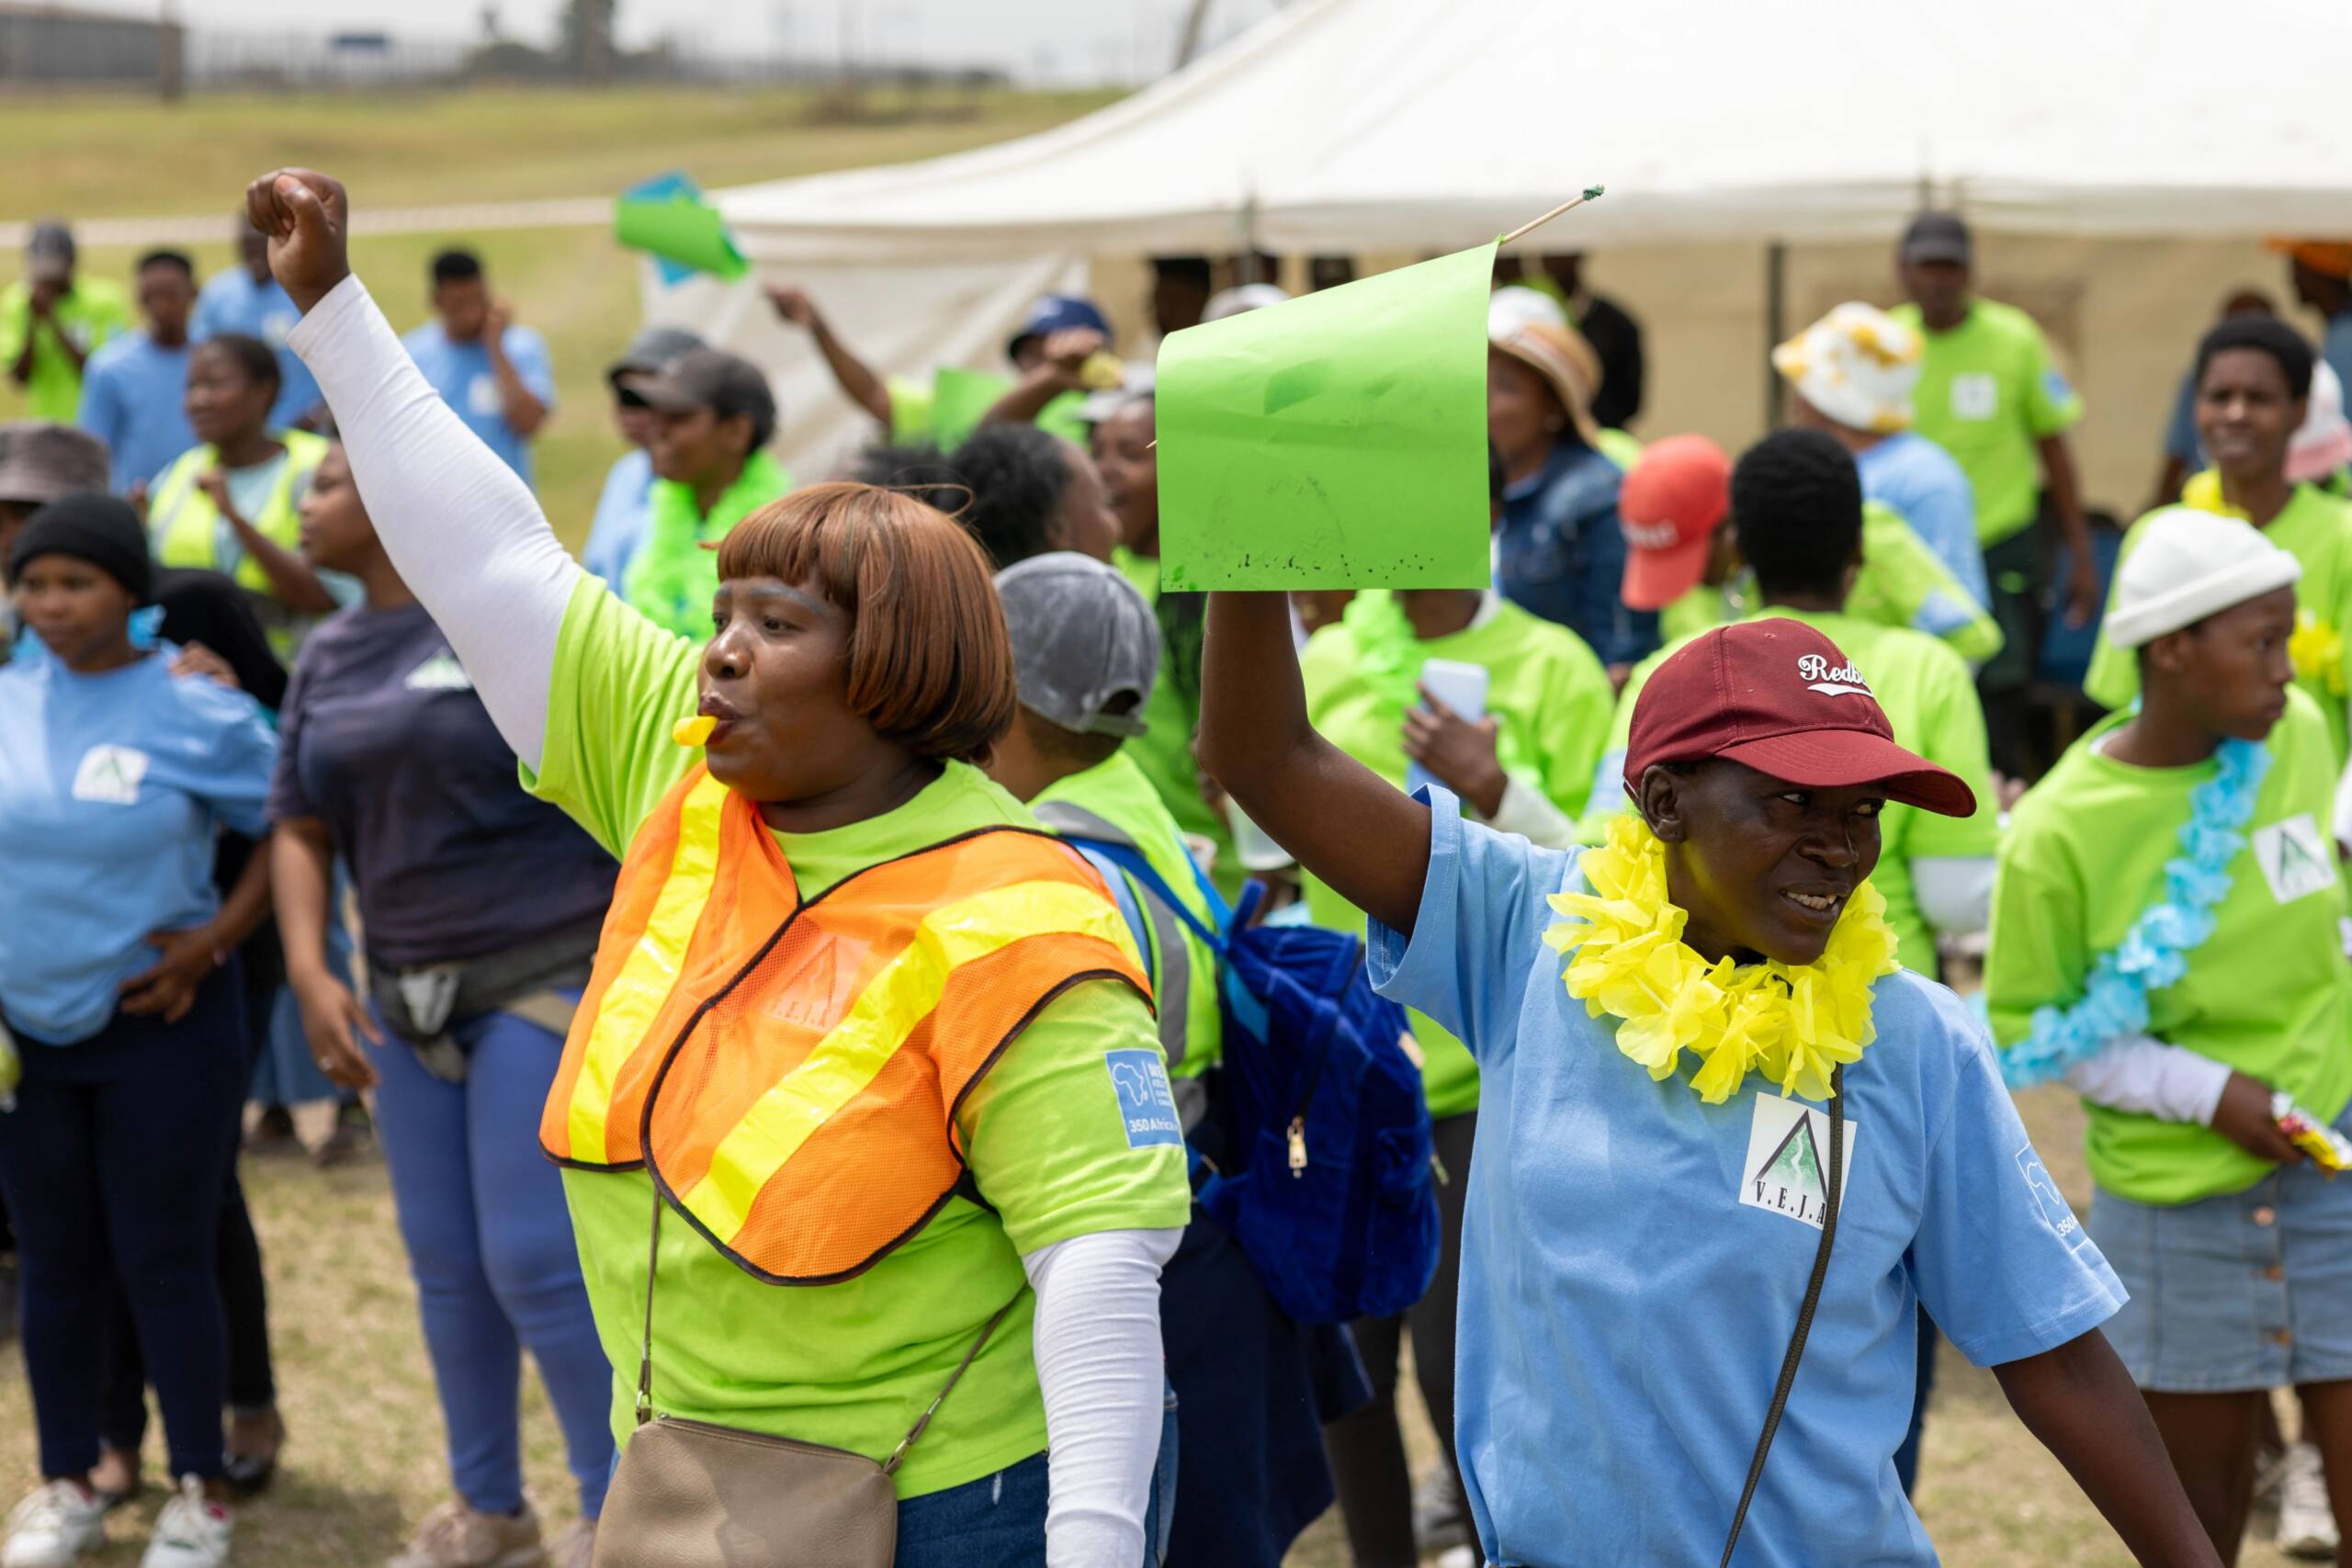 南アフリカ サソルバーグ 11月3日：活動家らがアフリカ最大のガス火力発電所であるSASOL発電所前でパレードとフェスティバルを敢行。化石燃料の影響を訴え、再生可能エネルギーへの増資を求めた。写真提供：Oliver Karstel / Sound Idea